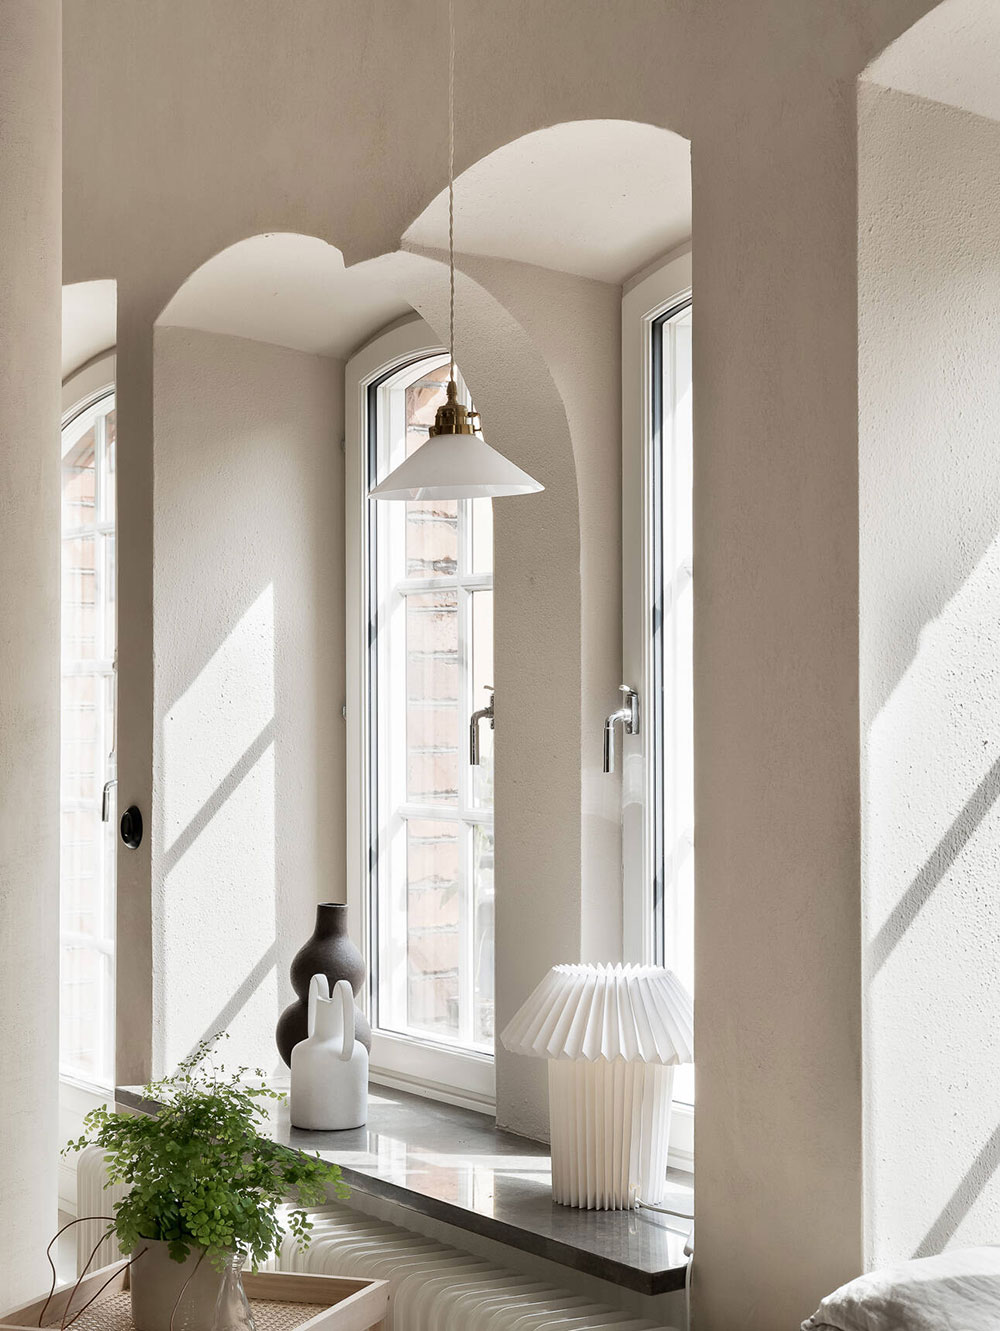 Мягкий монохромный интерьер и скошенные потолки: интересный вариант оформления мансардной квартиры